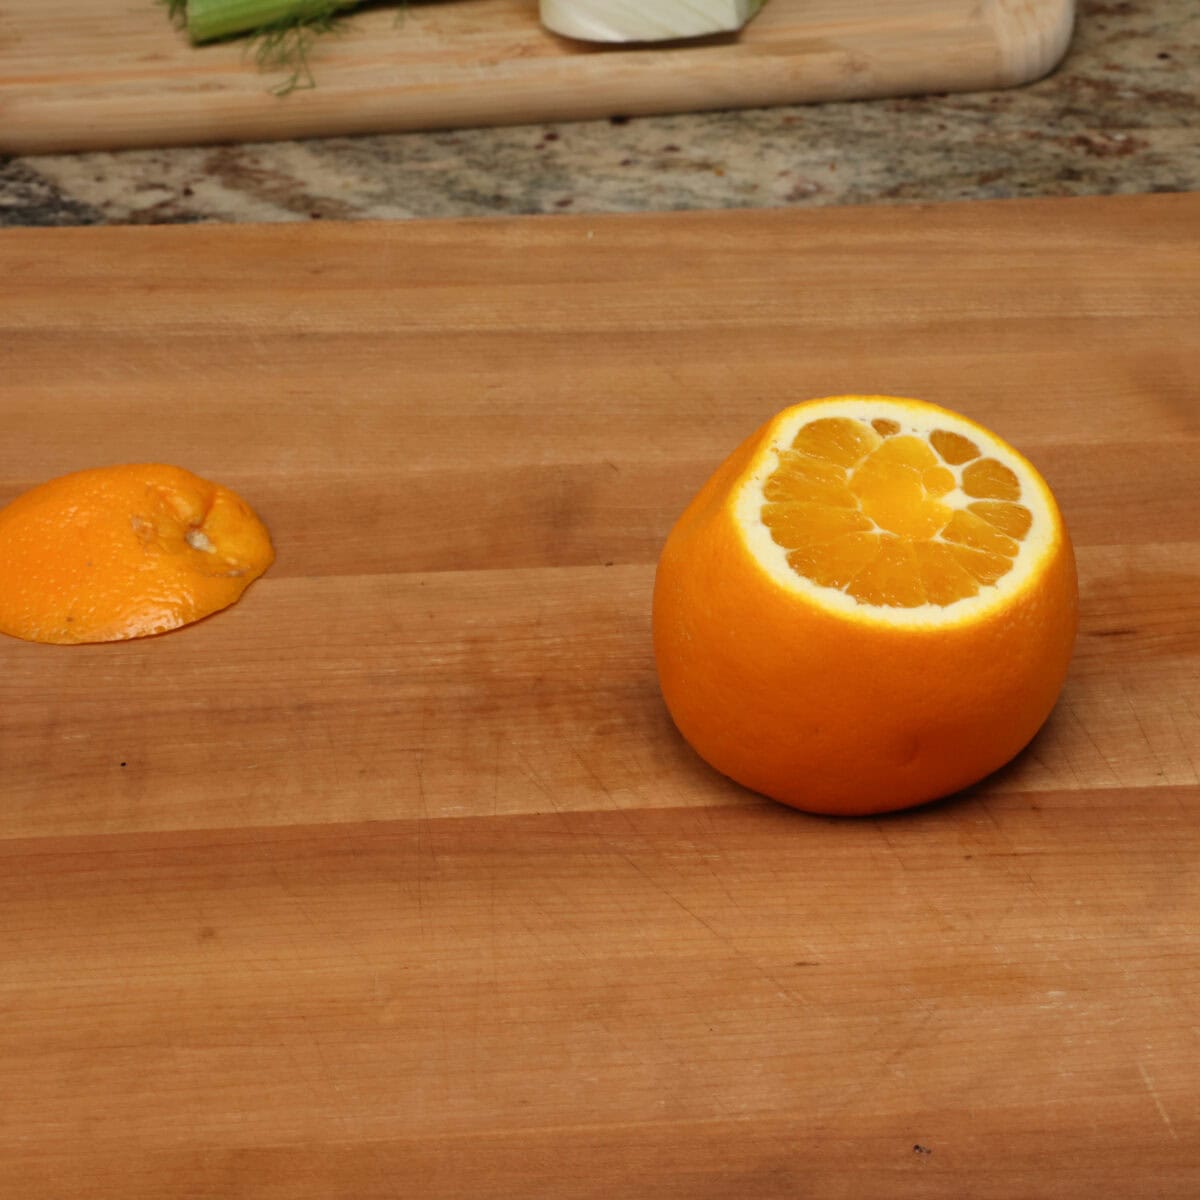 an orange on a table.